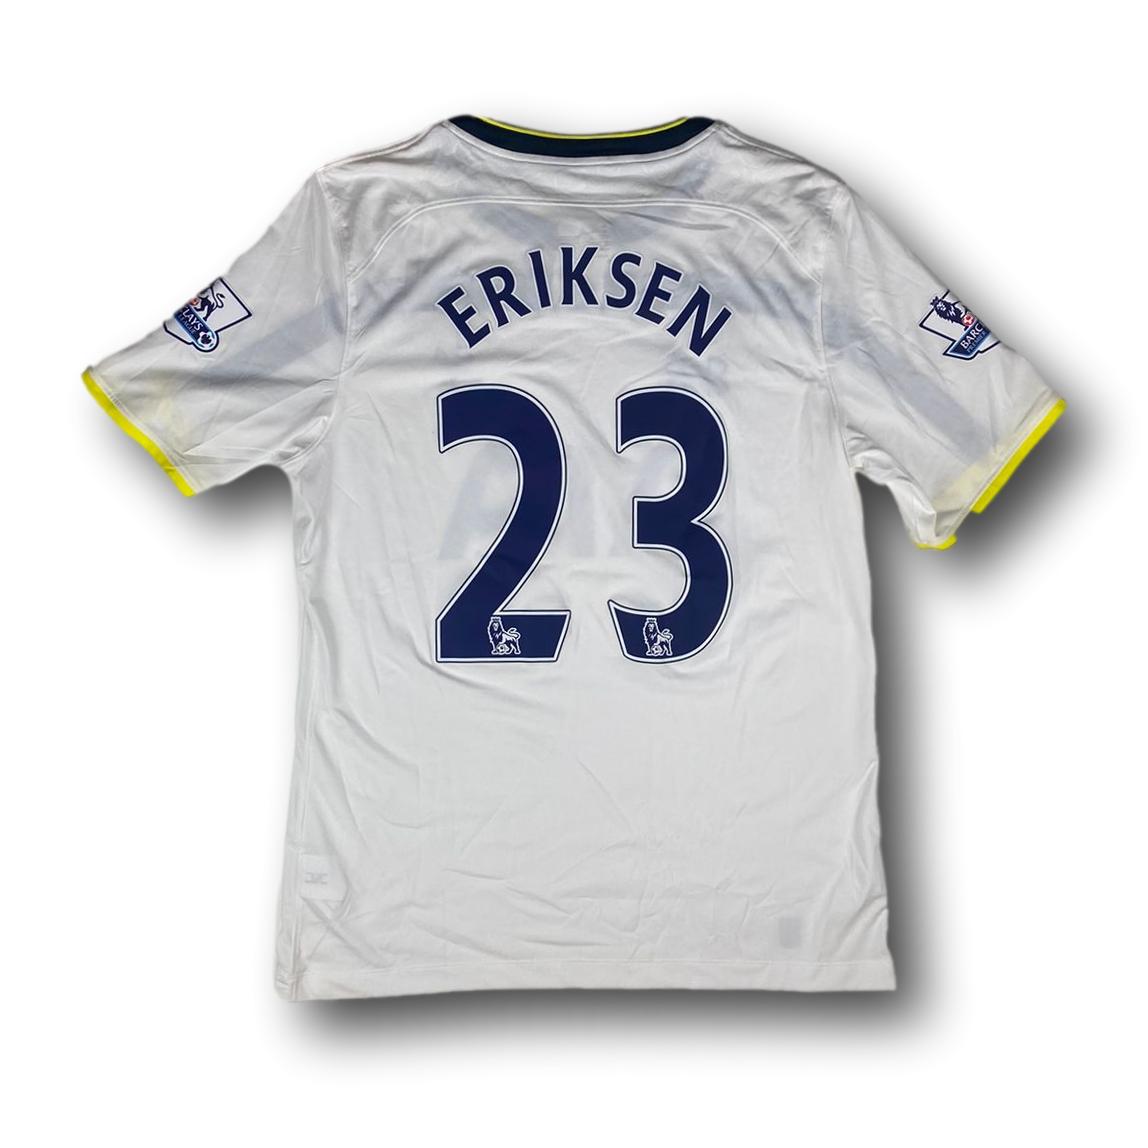 Fussballtrikot Tottenham Hotspurs - 2014-15 - heim - under armour - Eriksen#23 XL